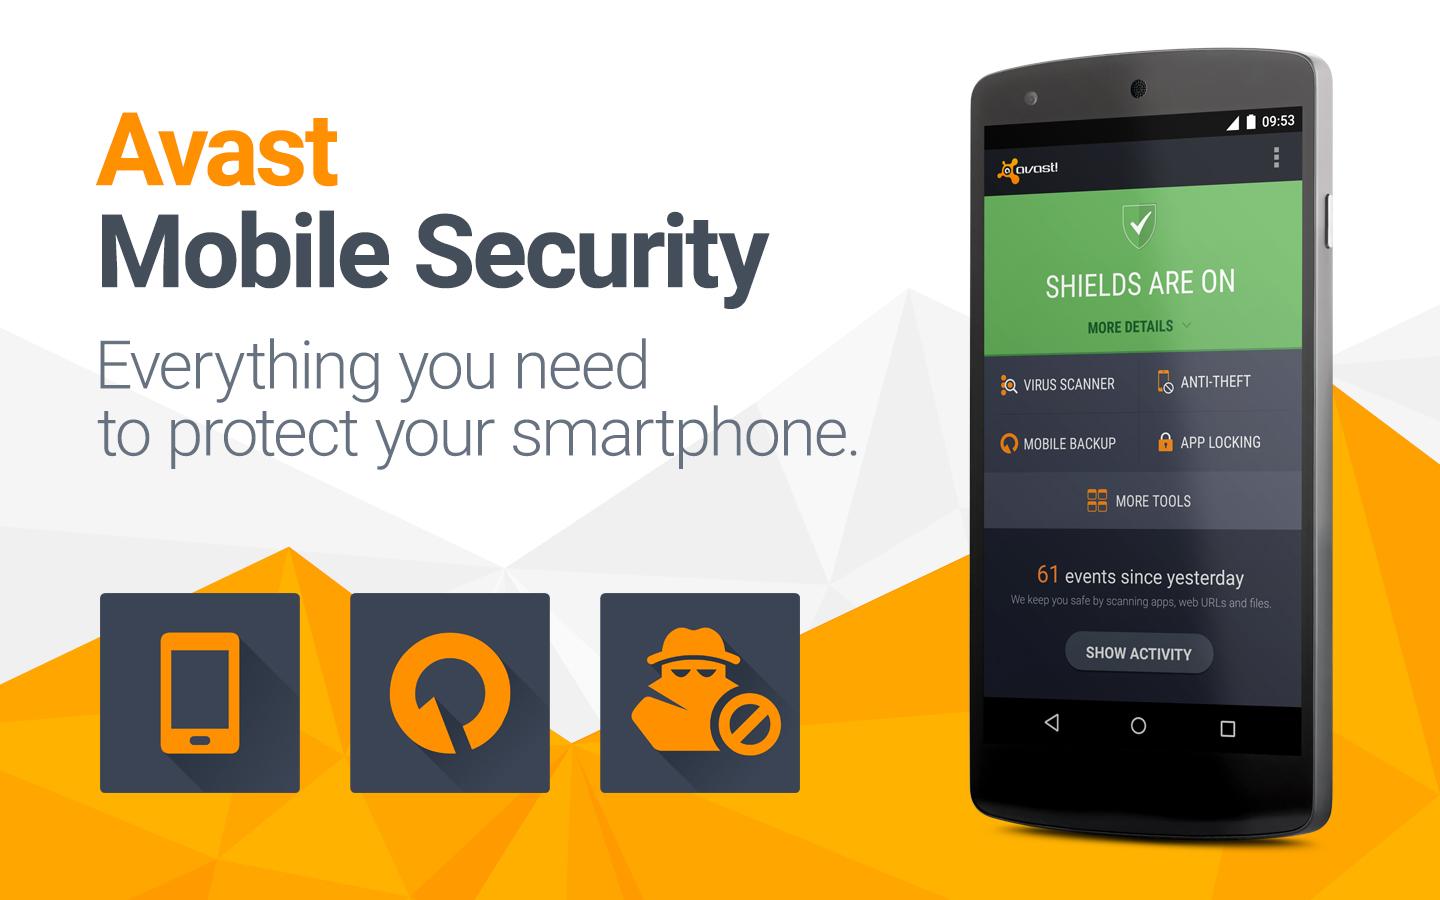 أفاست تُحدّث تطبيقها Mobile Security بدعمه لبصمة الأصبع وأكثر